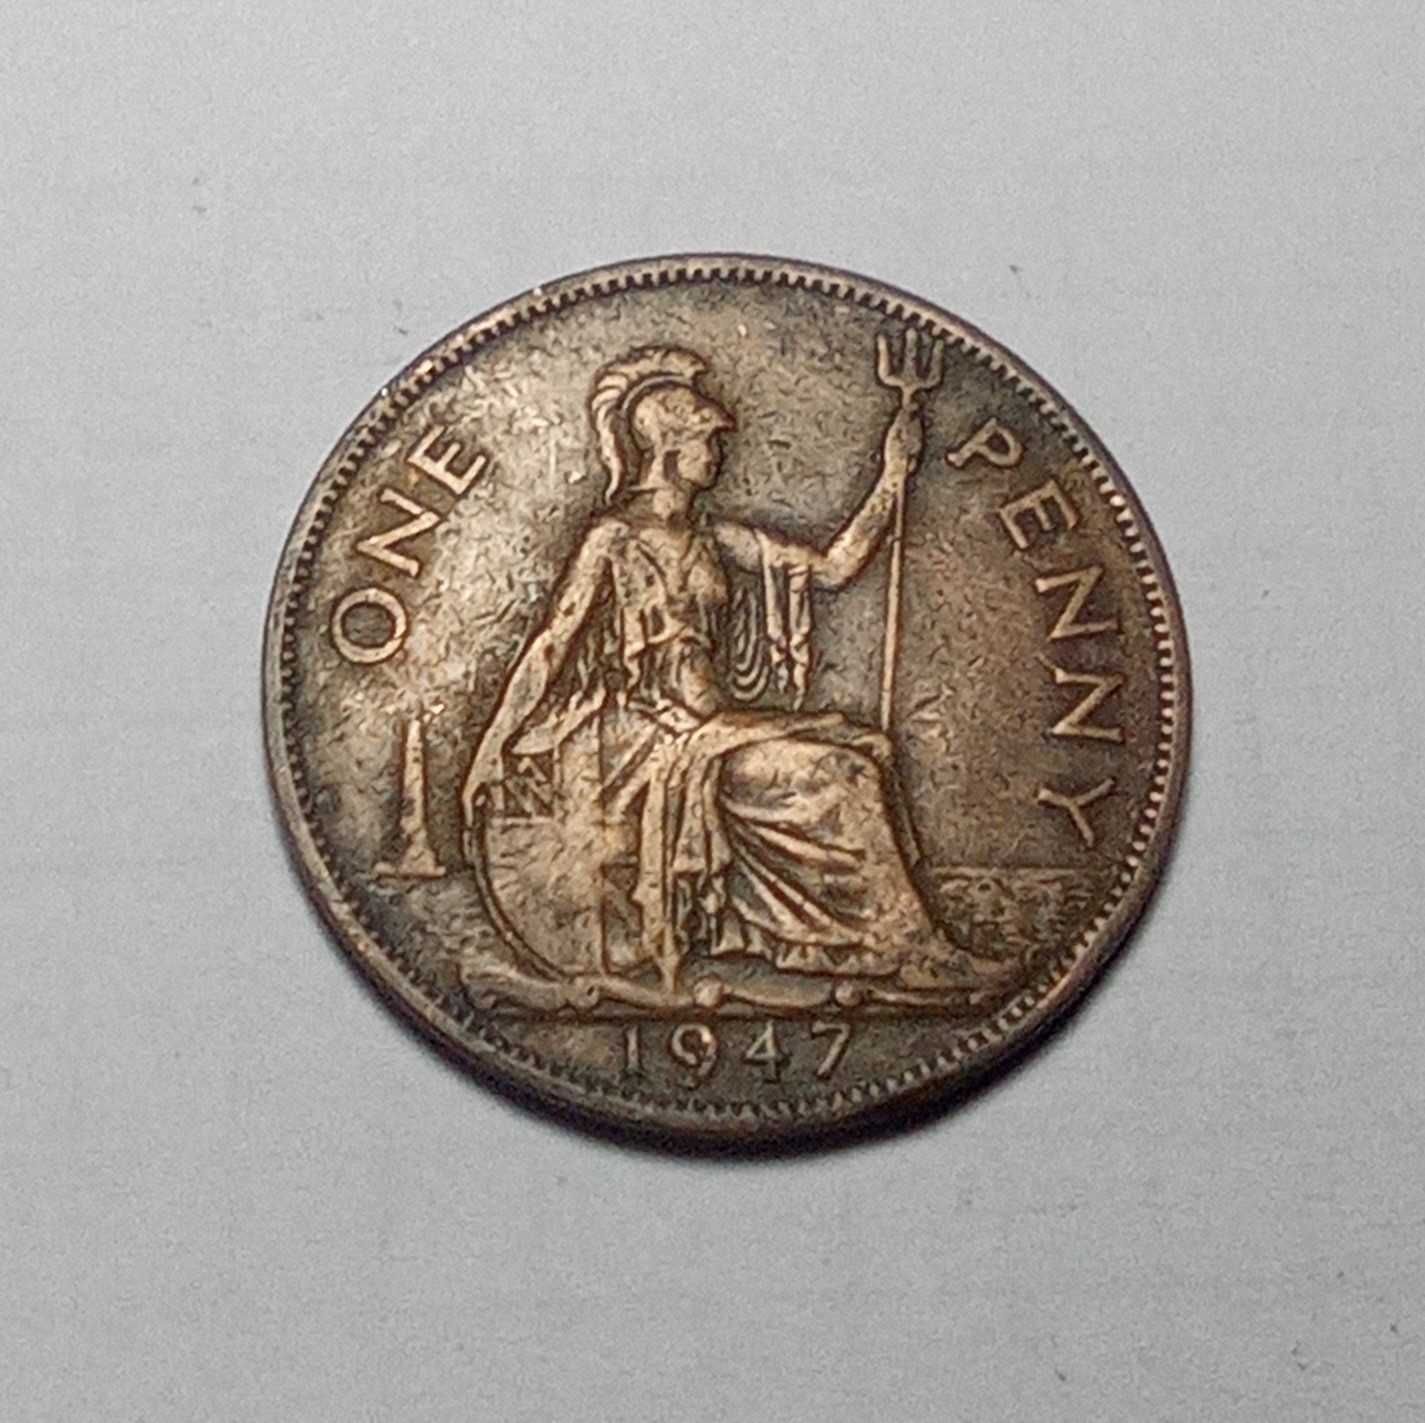 Monety Anglia One Penny różne roczniki.